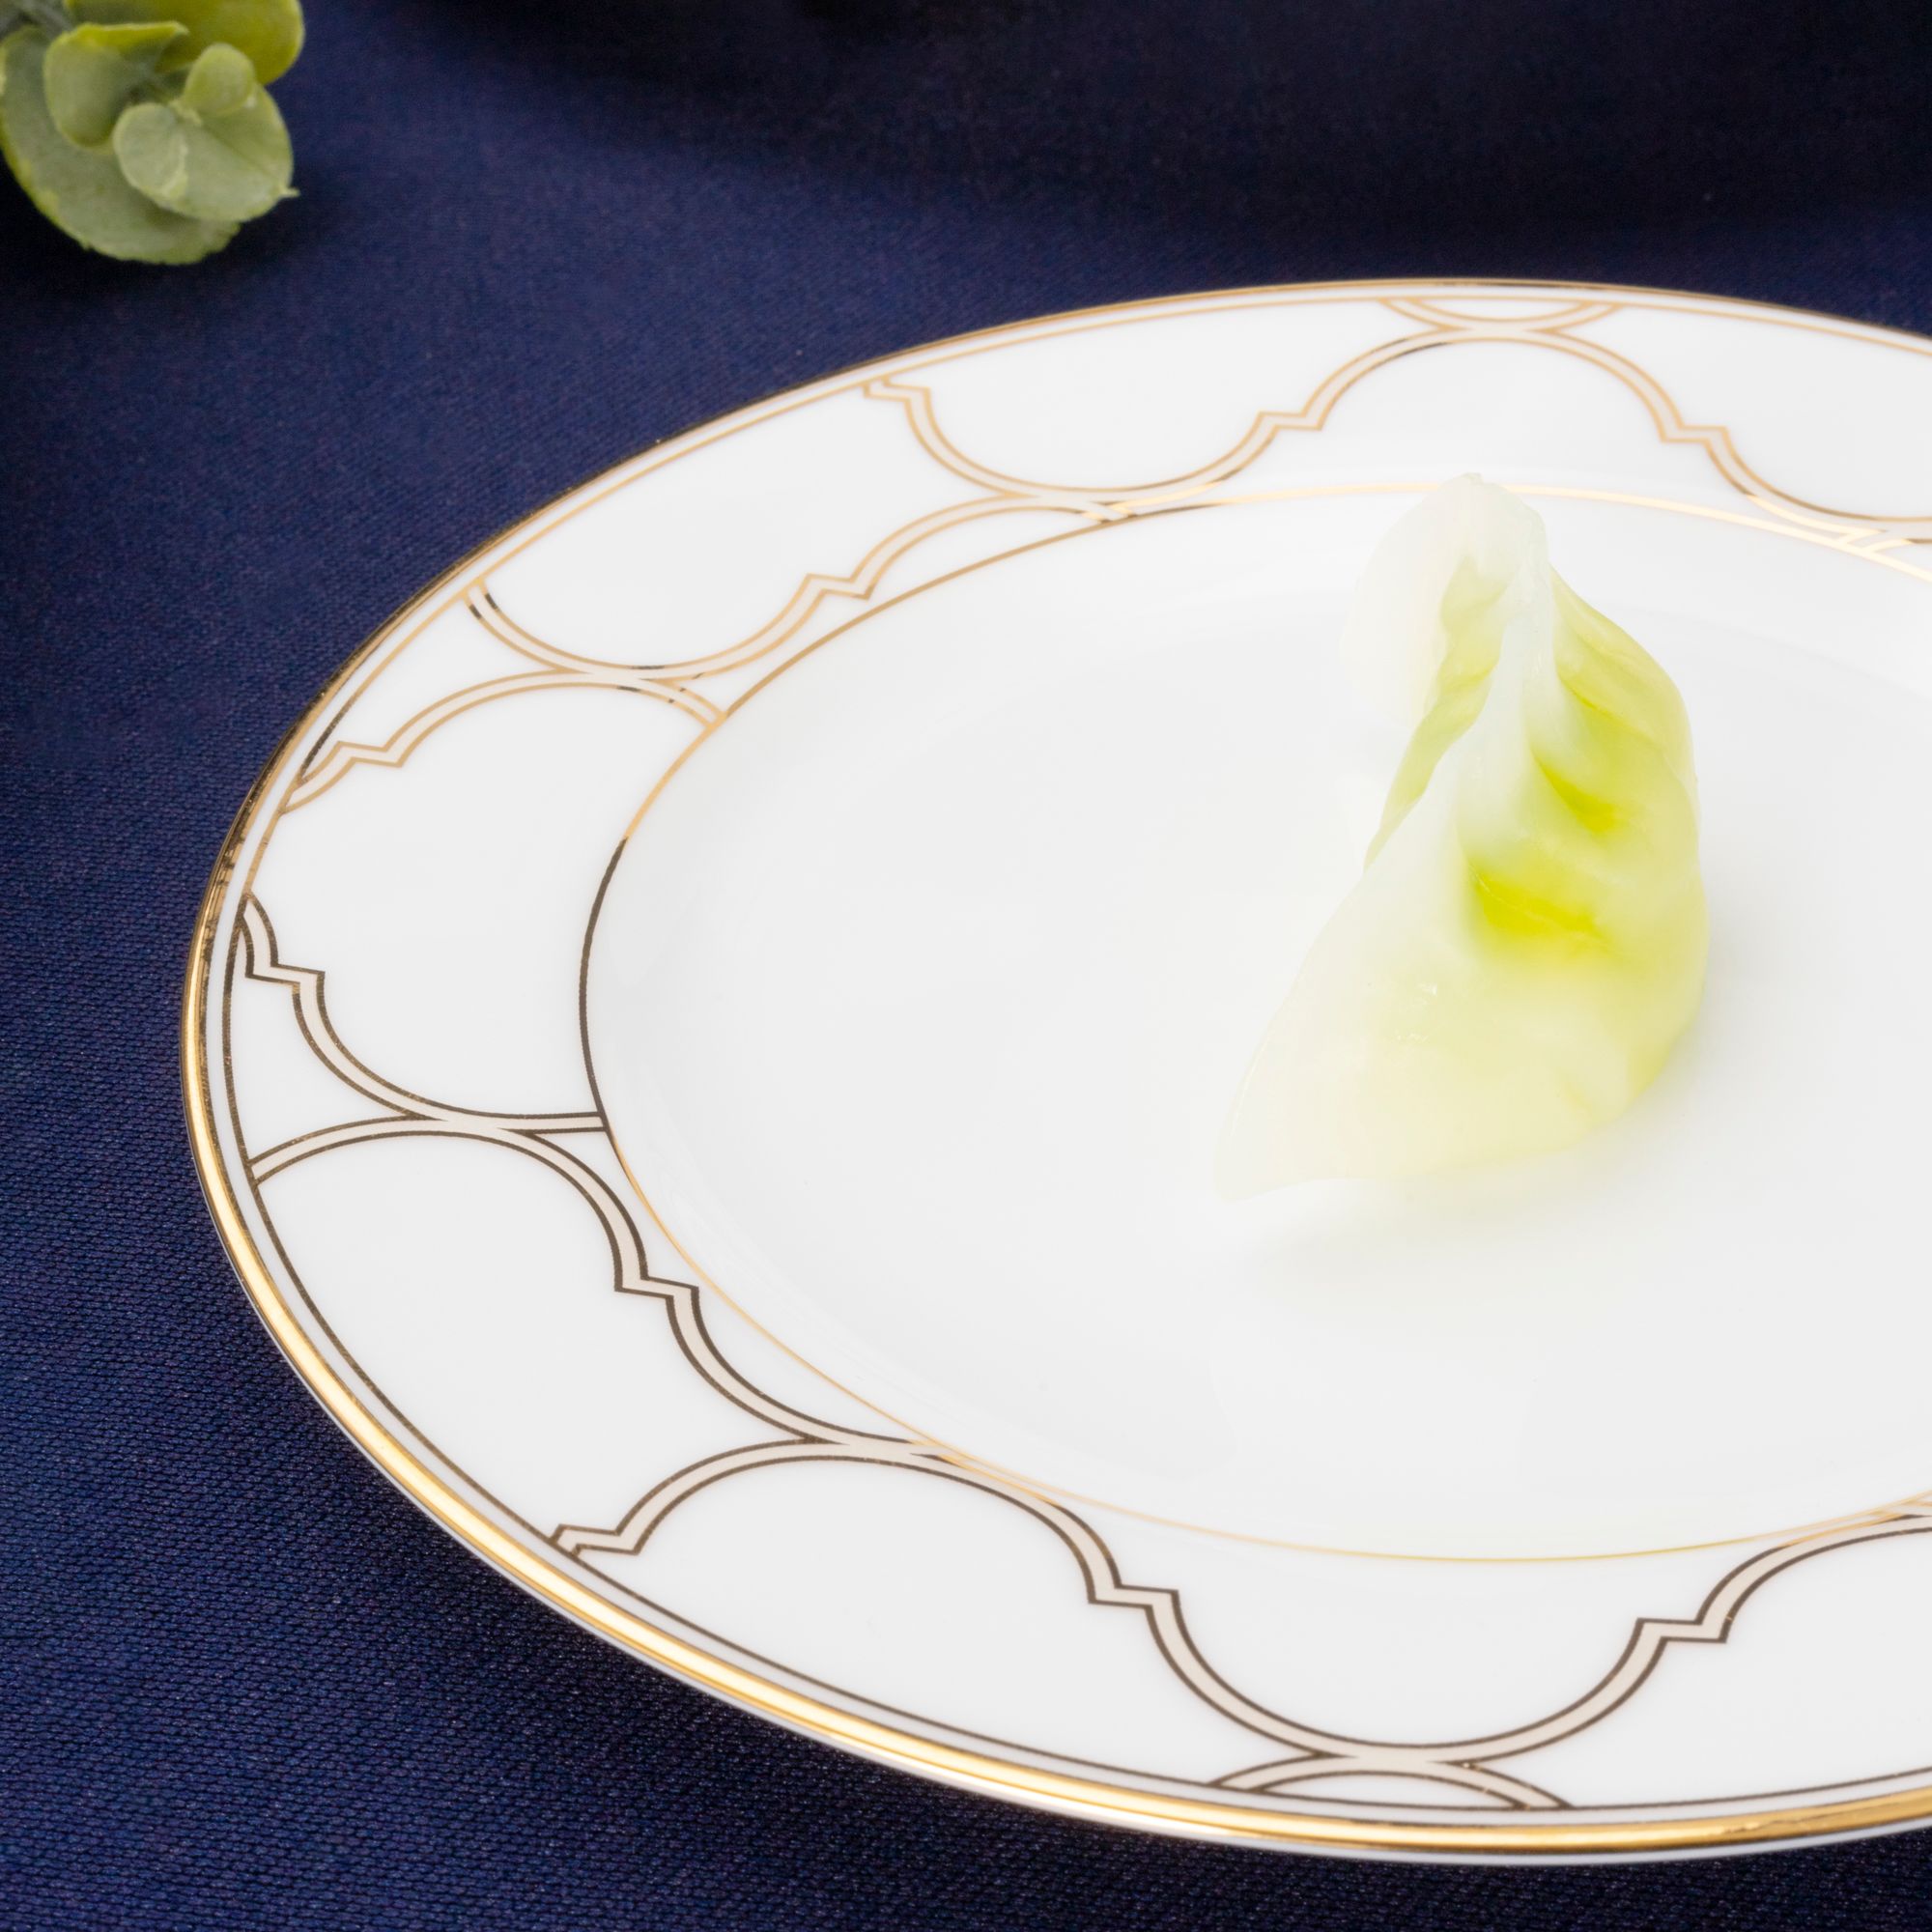  Bộ bát đĩa ăn Châu Á cơ bản 22 món sứ trắng | Eternal Palace Gold 1728L 